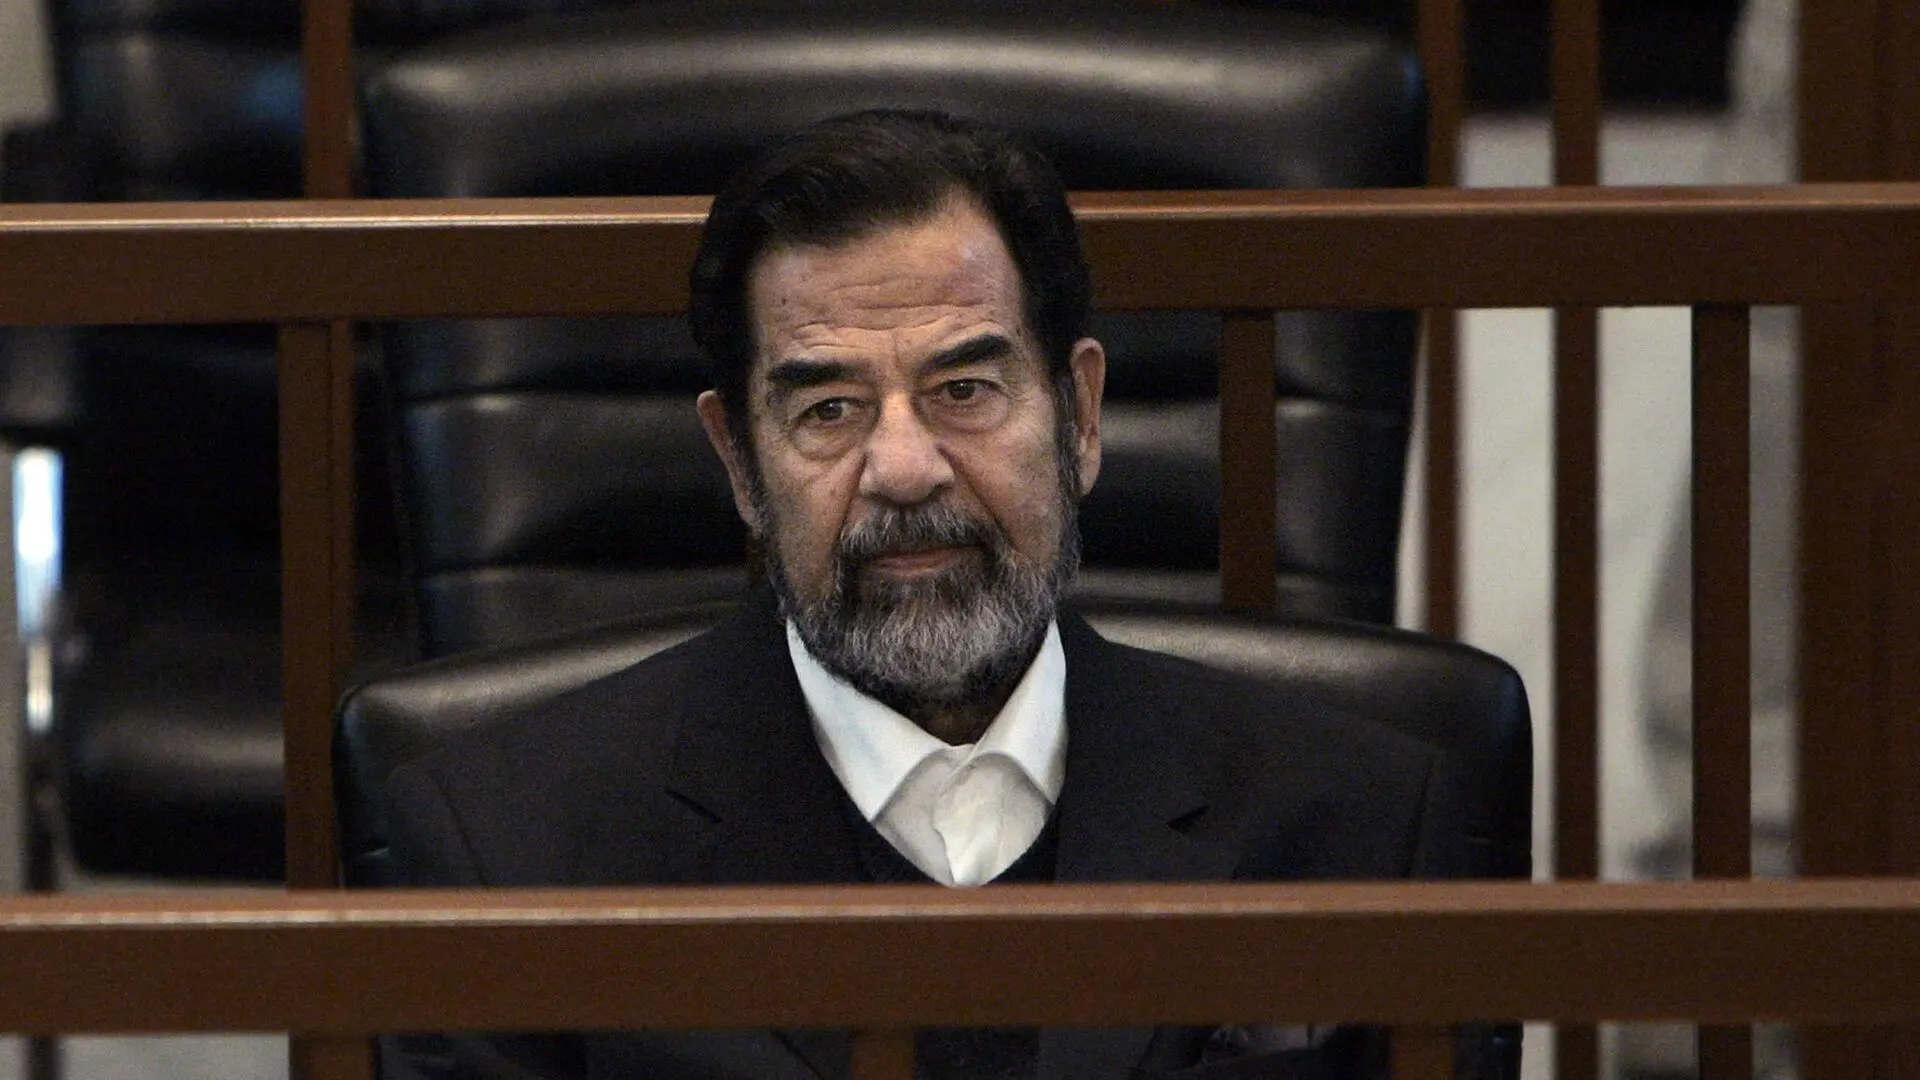 ببینید| لحظه اخراج صدام از دادگاه به خاطر درگیری با قاضی بر سر اجرای قانون!